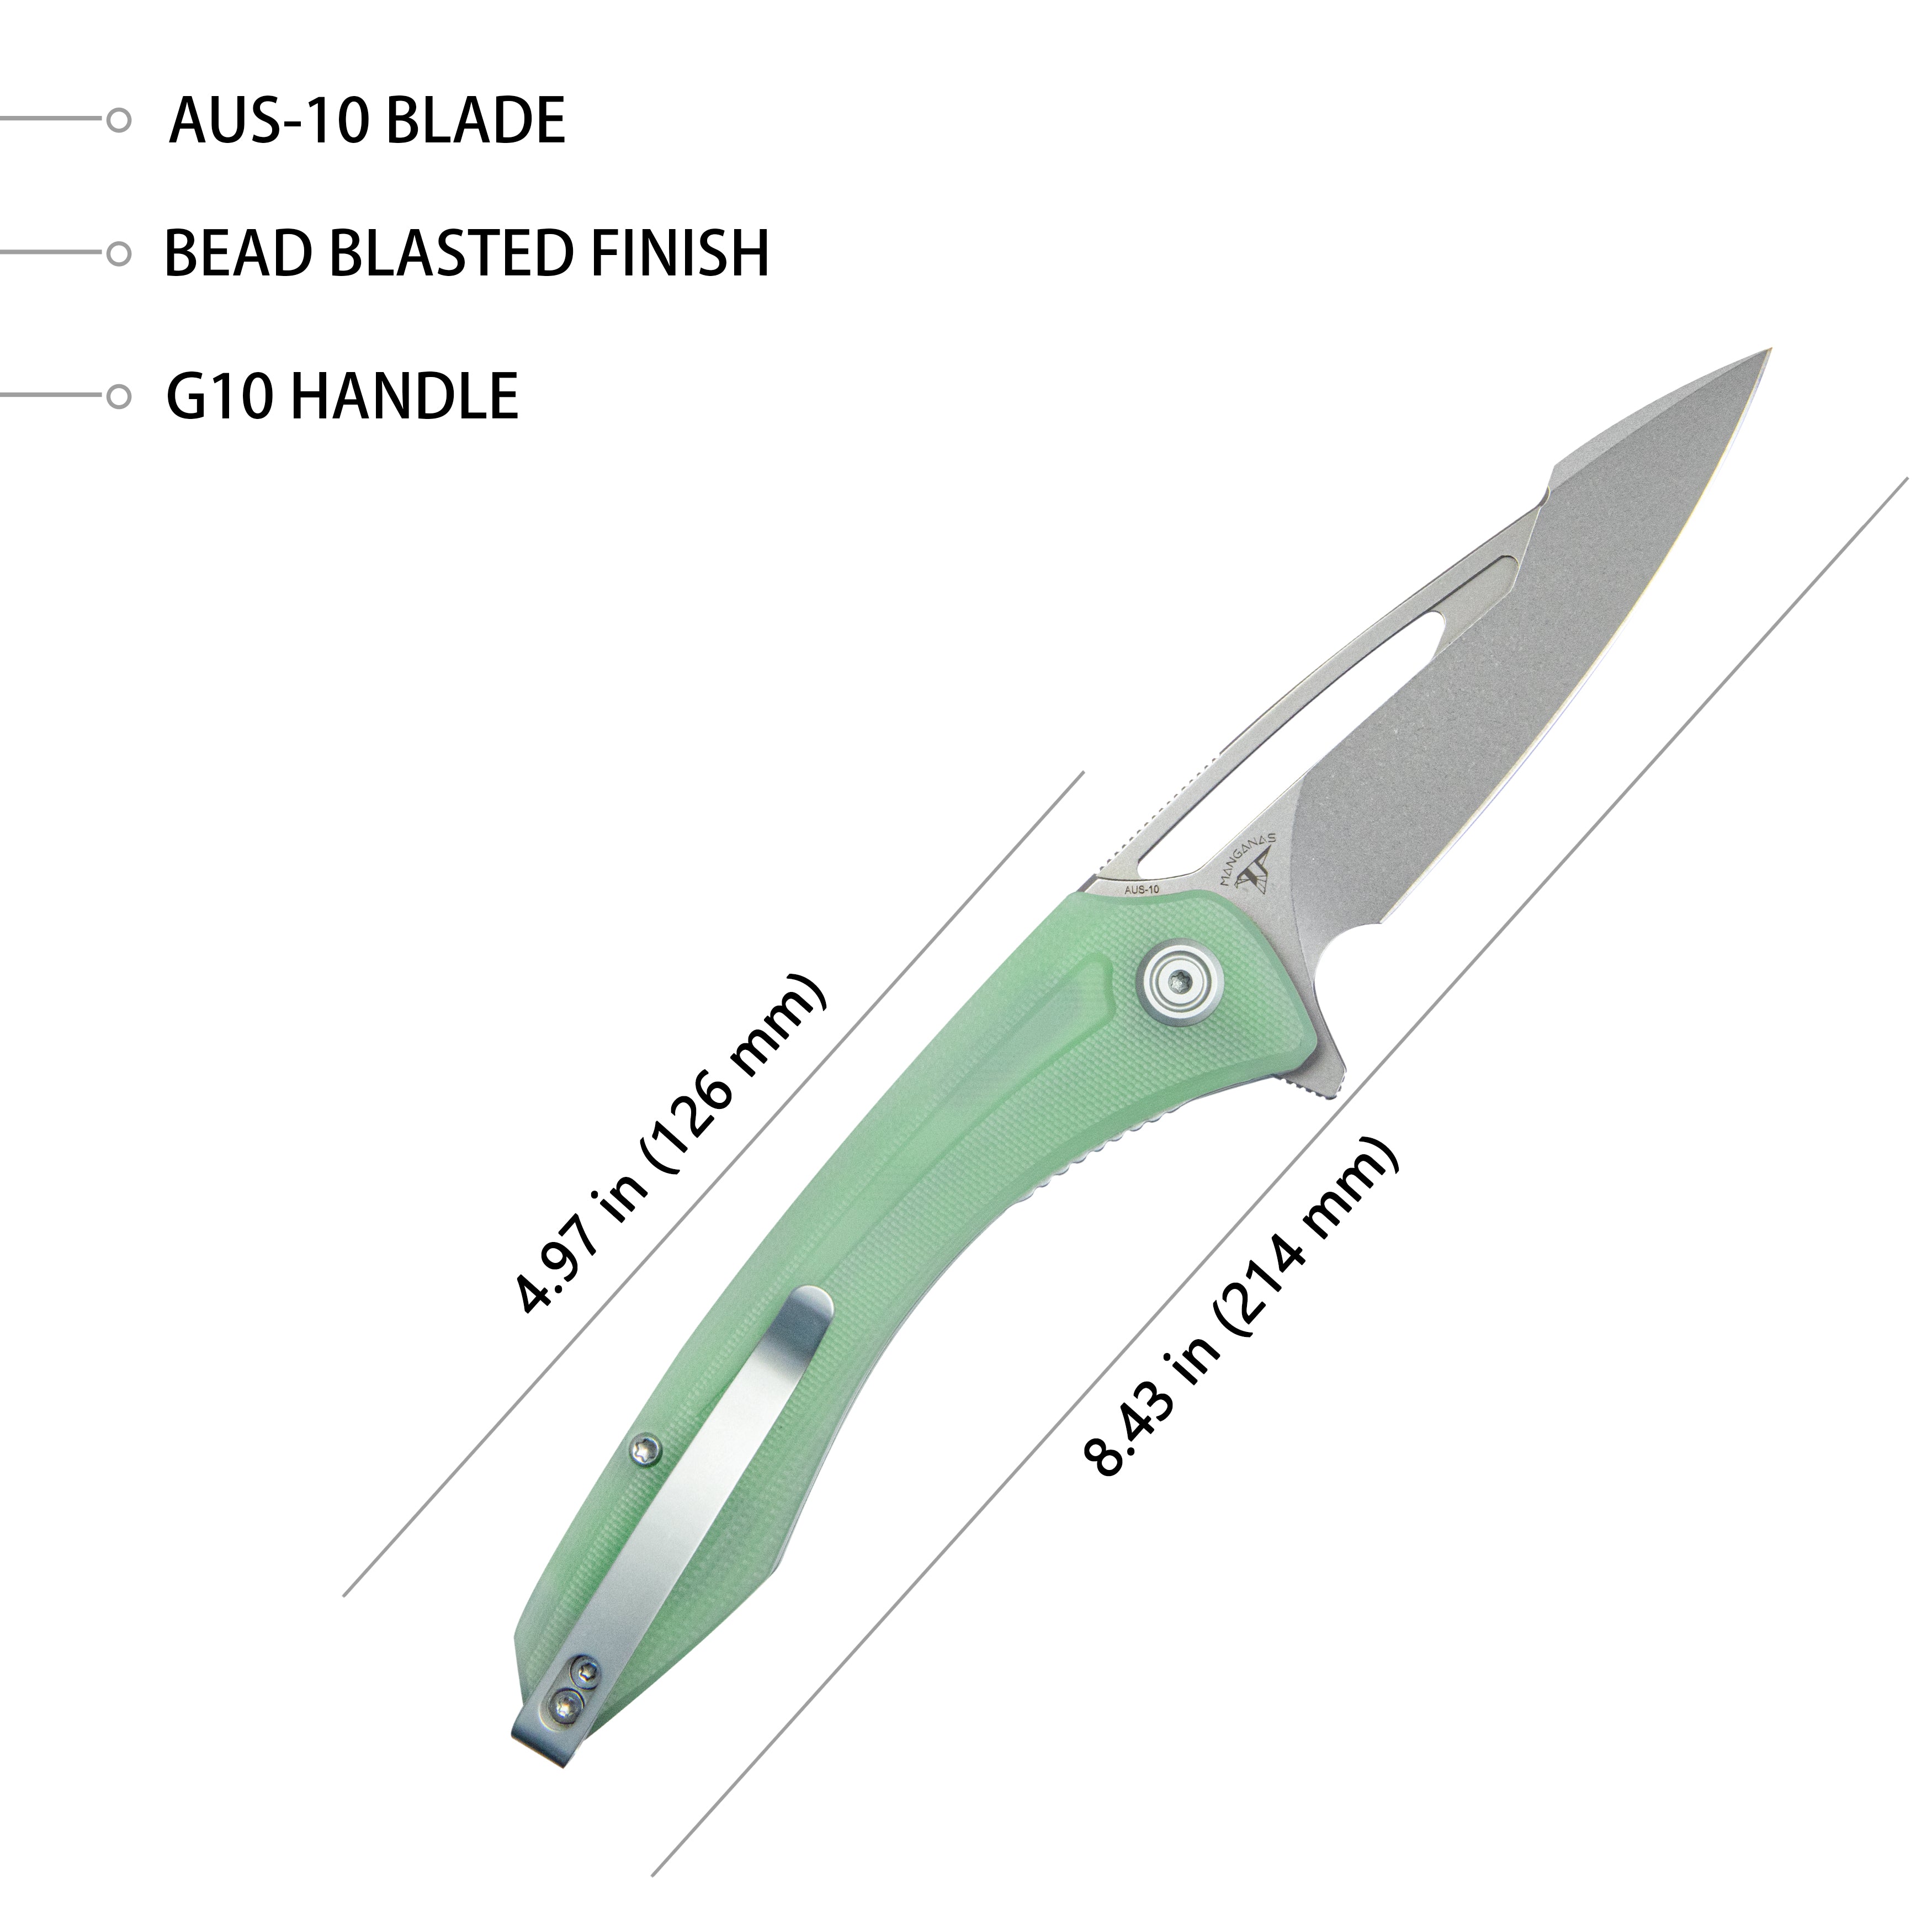 Kubey Merced Klappmesser, 3,46 Zoll perlgestrahlte AUS-10-Klinge mit robustem Jade-G10-Griff, zuverlässiges taktisches Taschenmesser KU345D